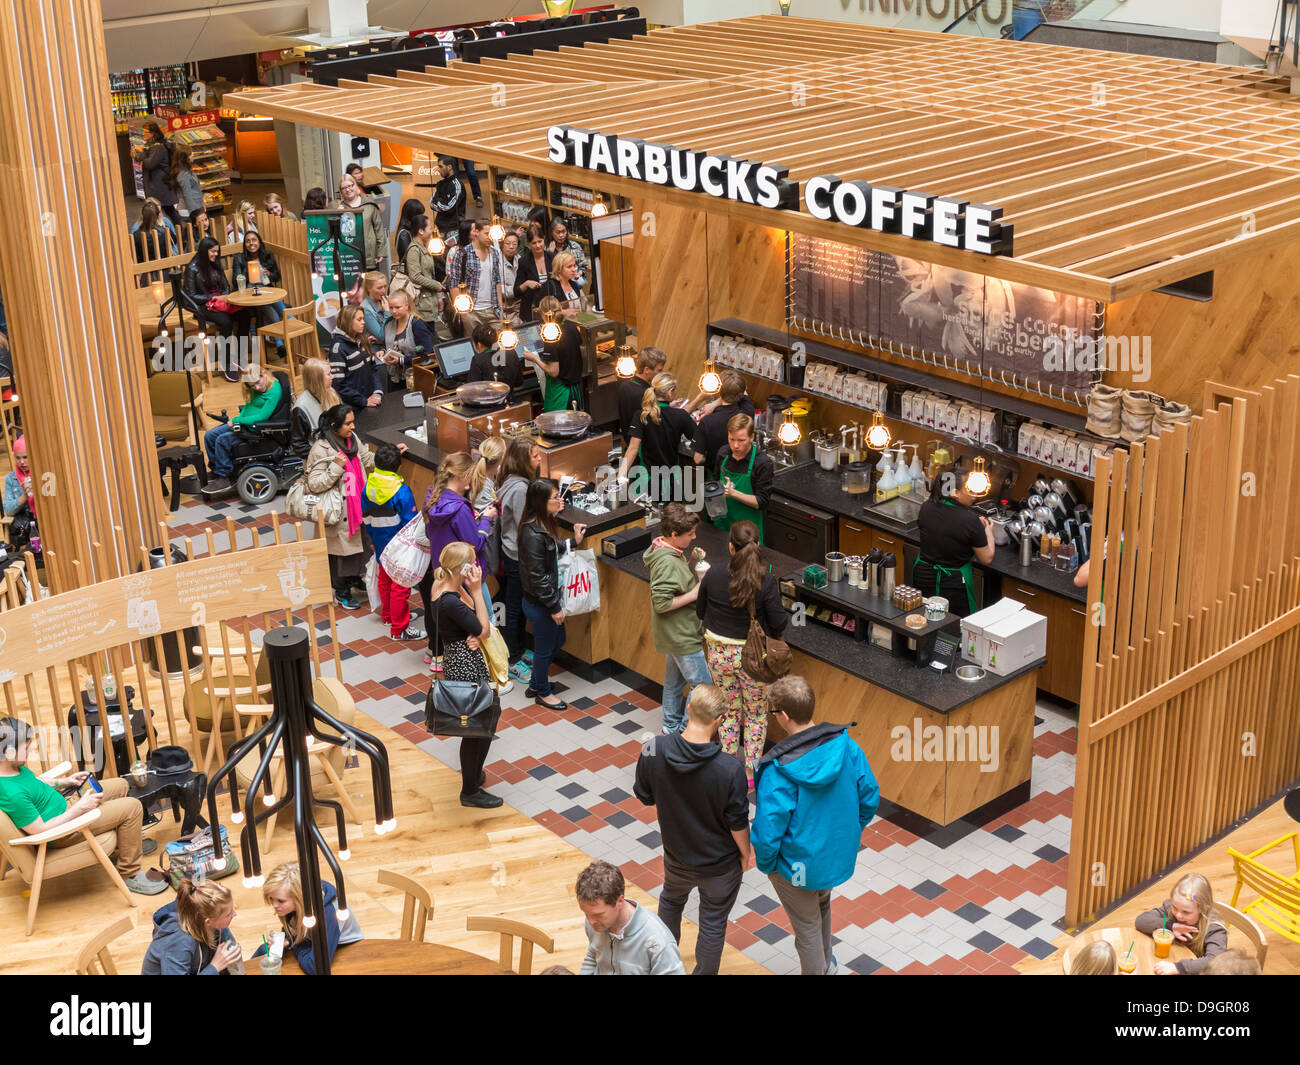 Starbucks Coffee shop in un centro commerciale a Oslo, Norvegia Foto Stock